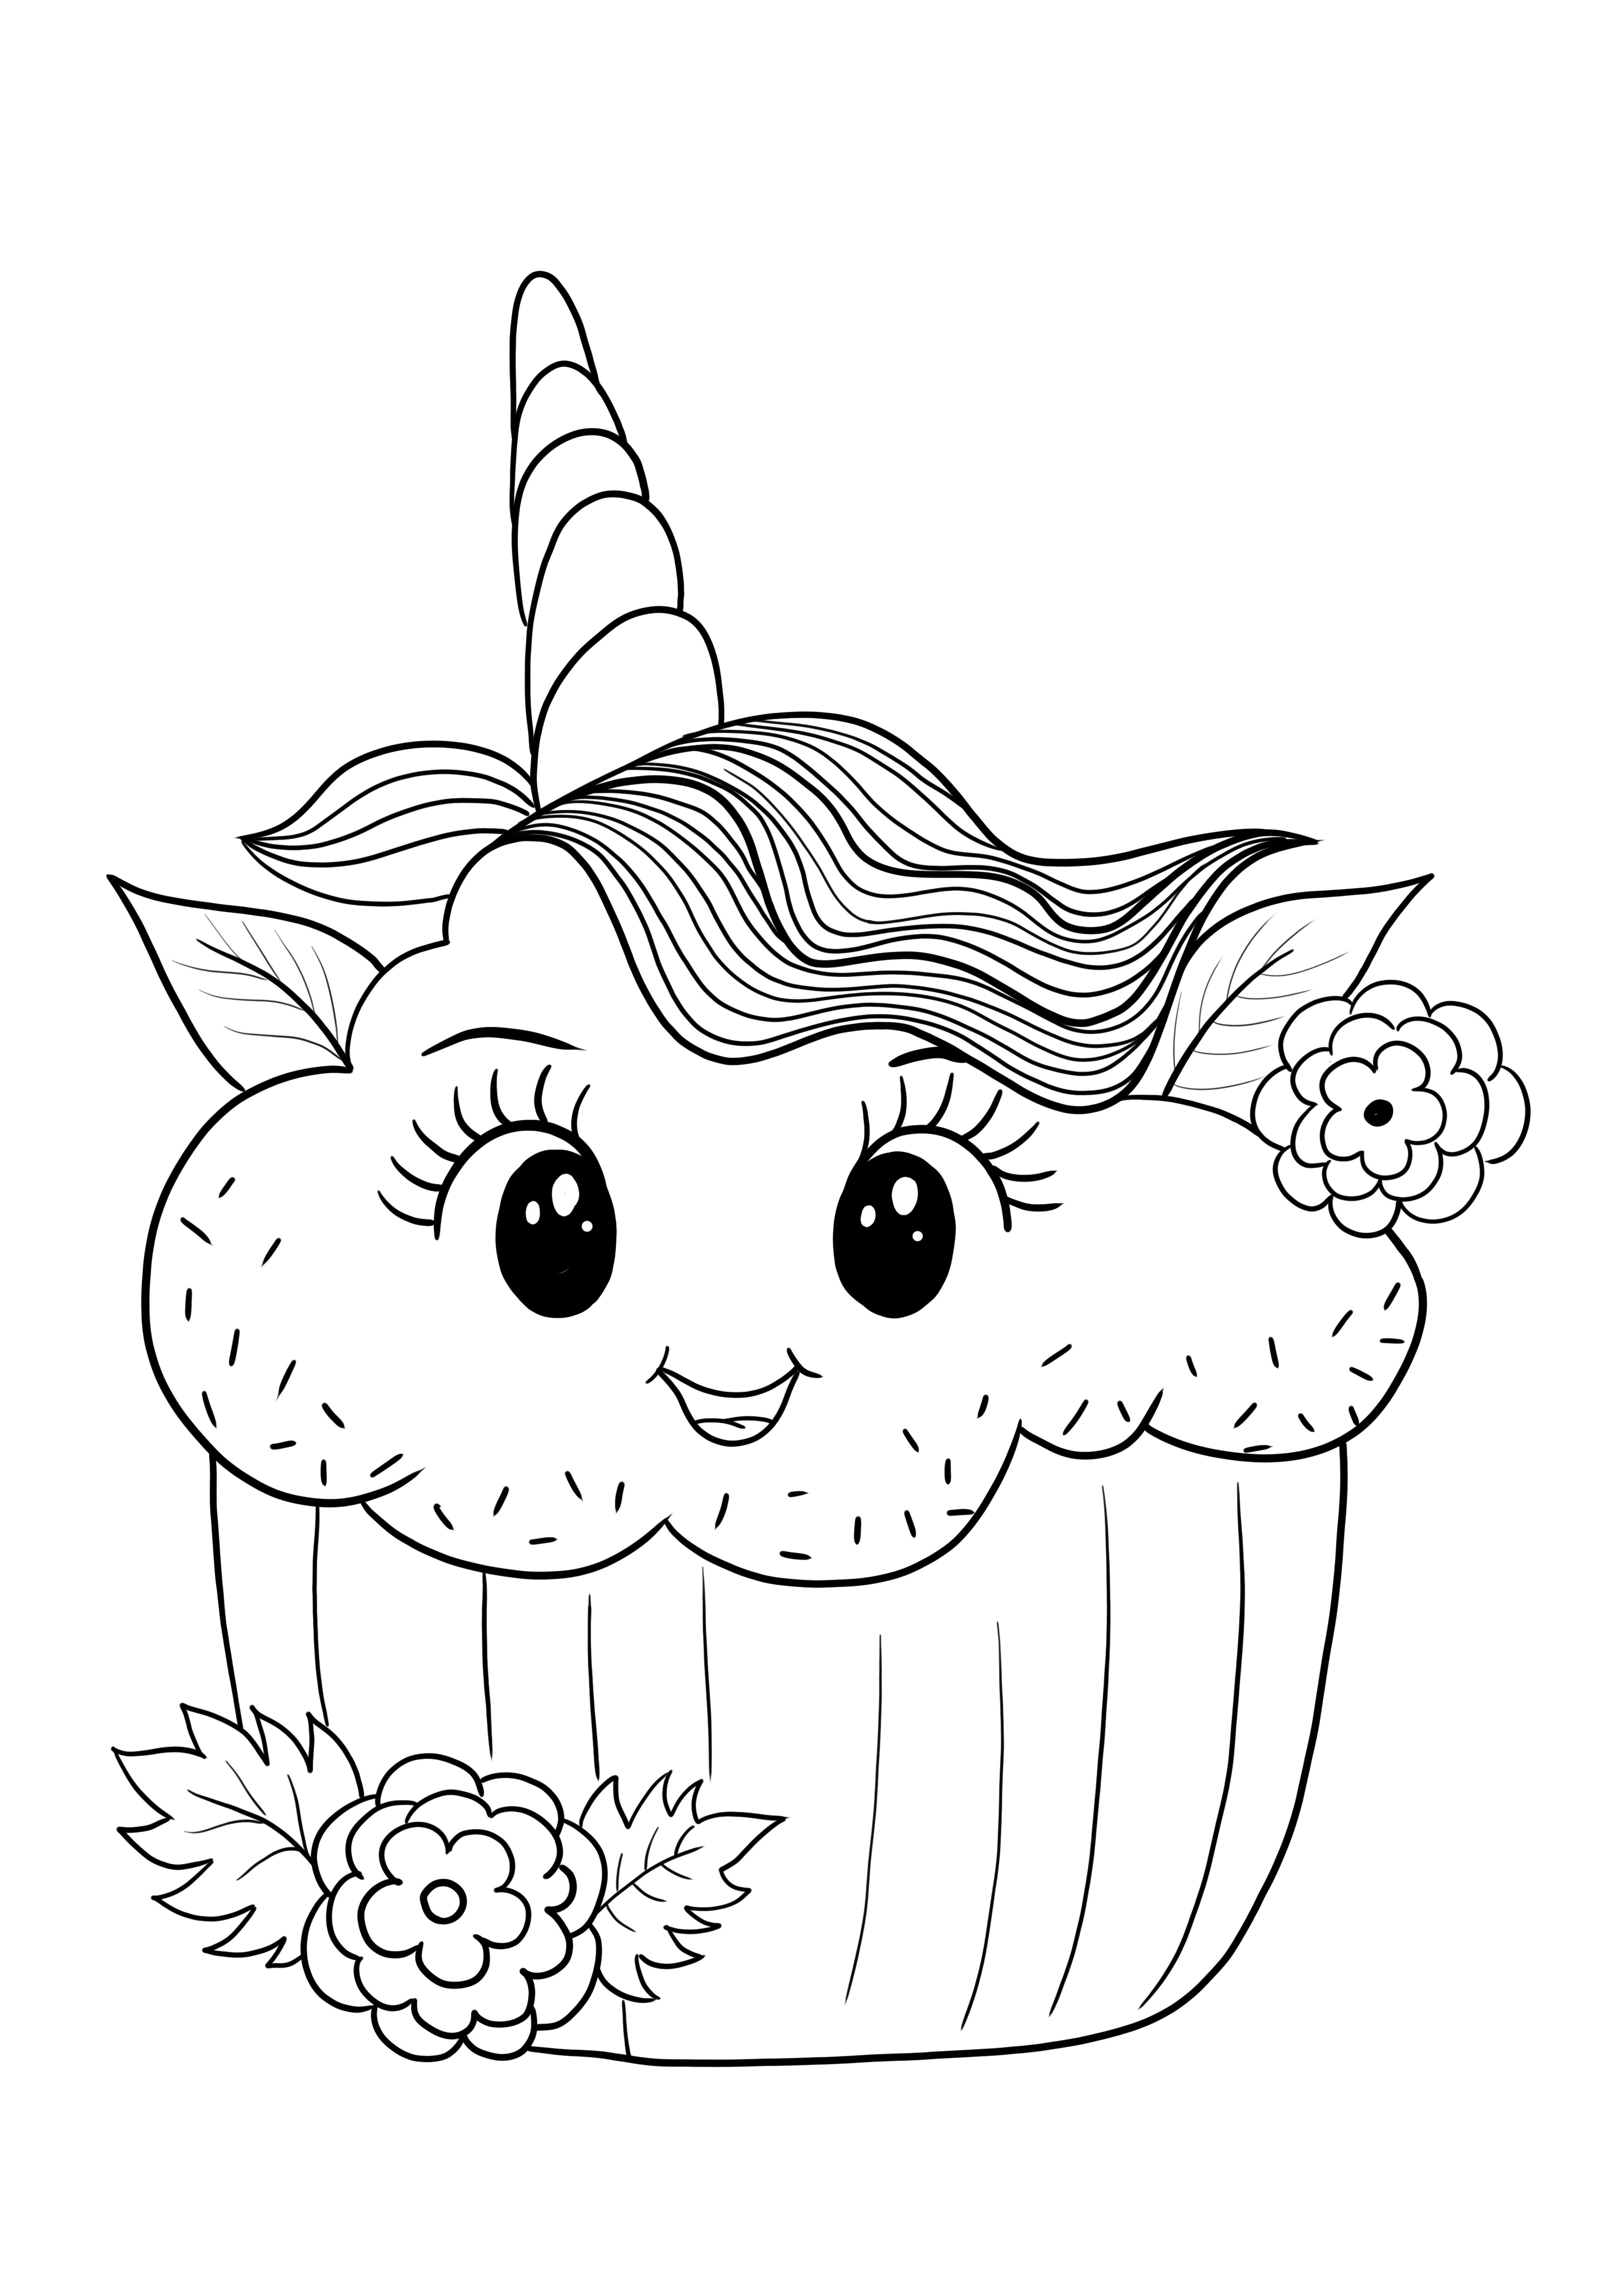 Shopkins unicorn cupcake -kuva tulostukseen ilmaiseksi